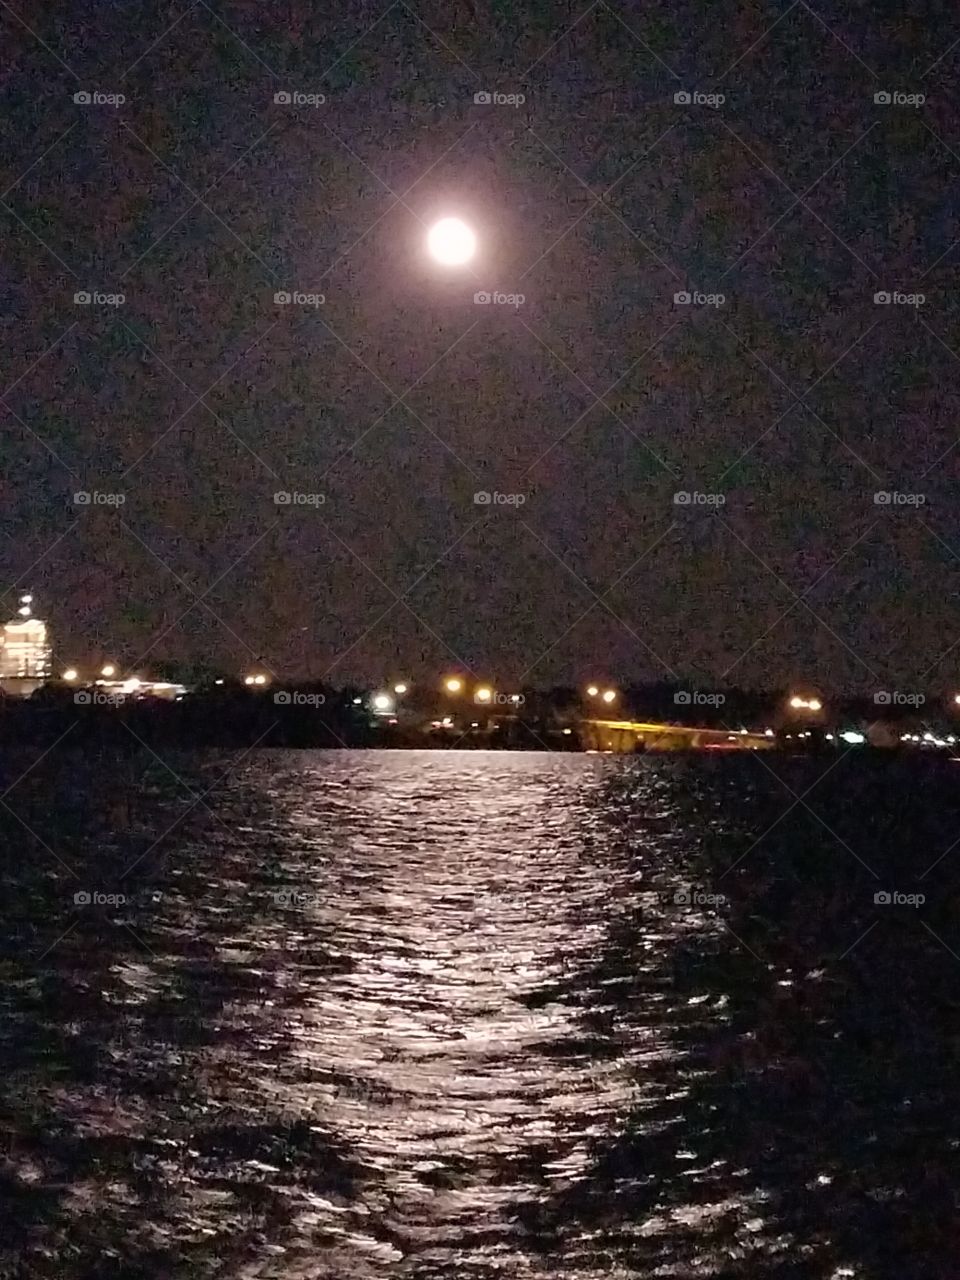 Moonlight over water.